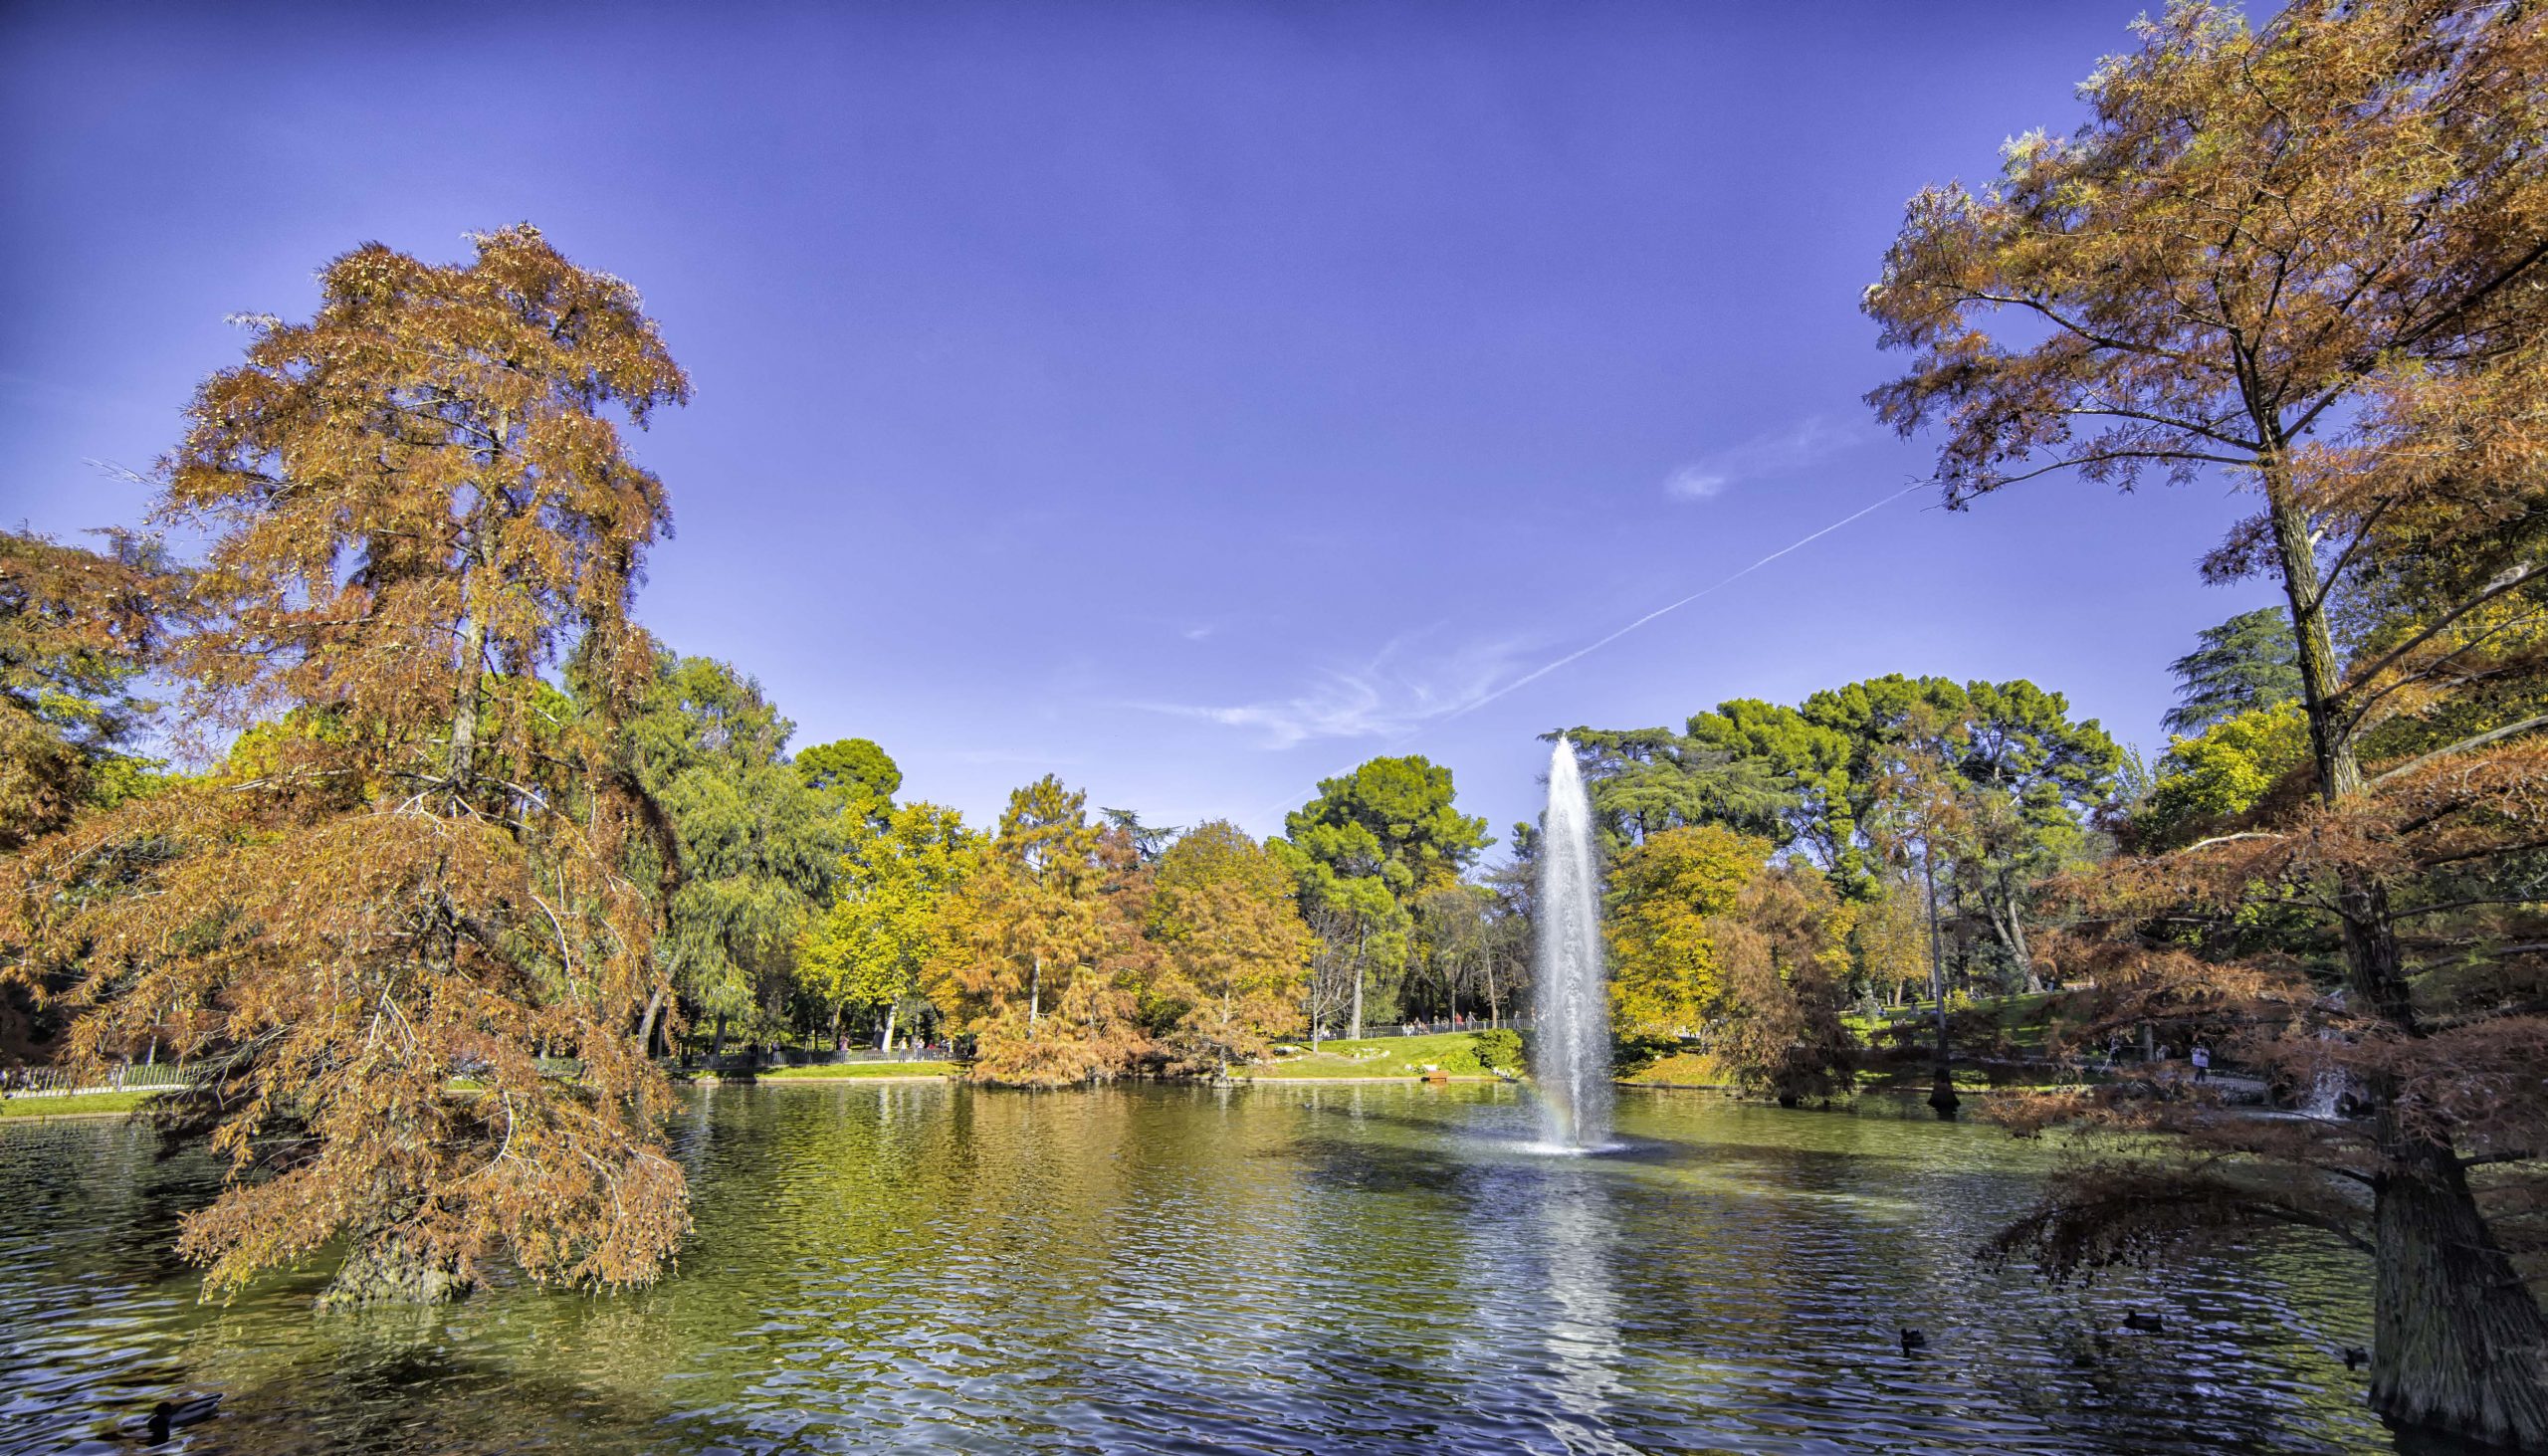 Parque de El Retiro: Una joya verde en el corazón de Madrid